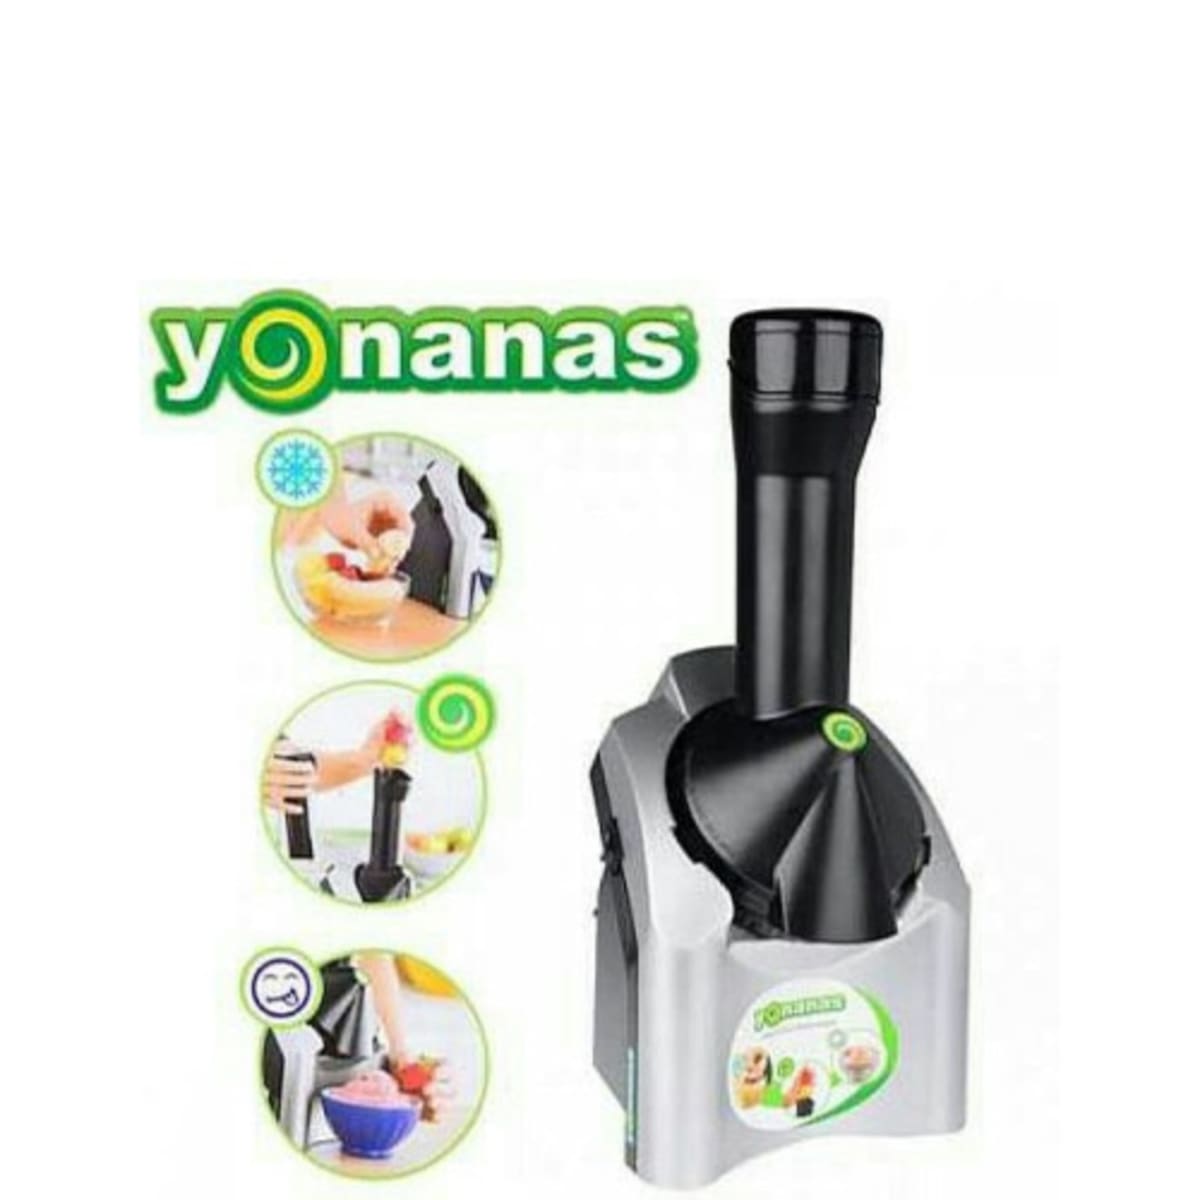 Yonanas Ice Cream Smoothie Maker